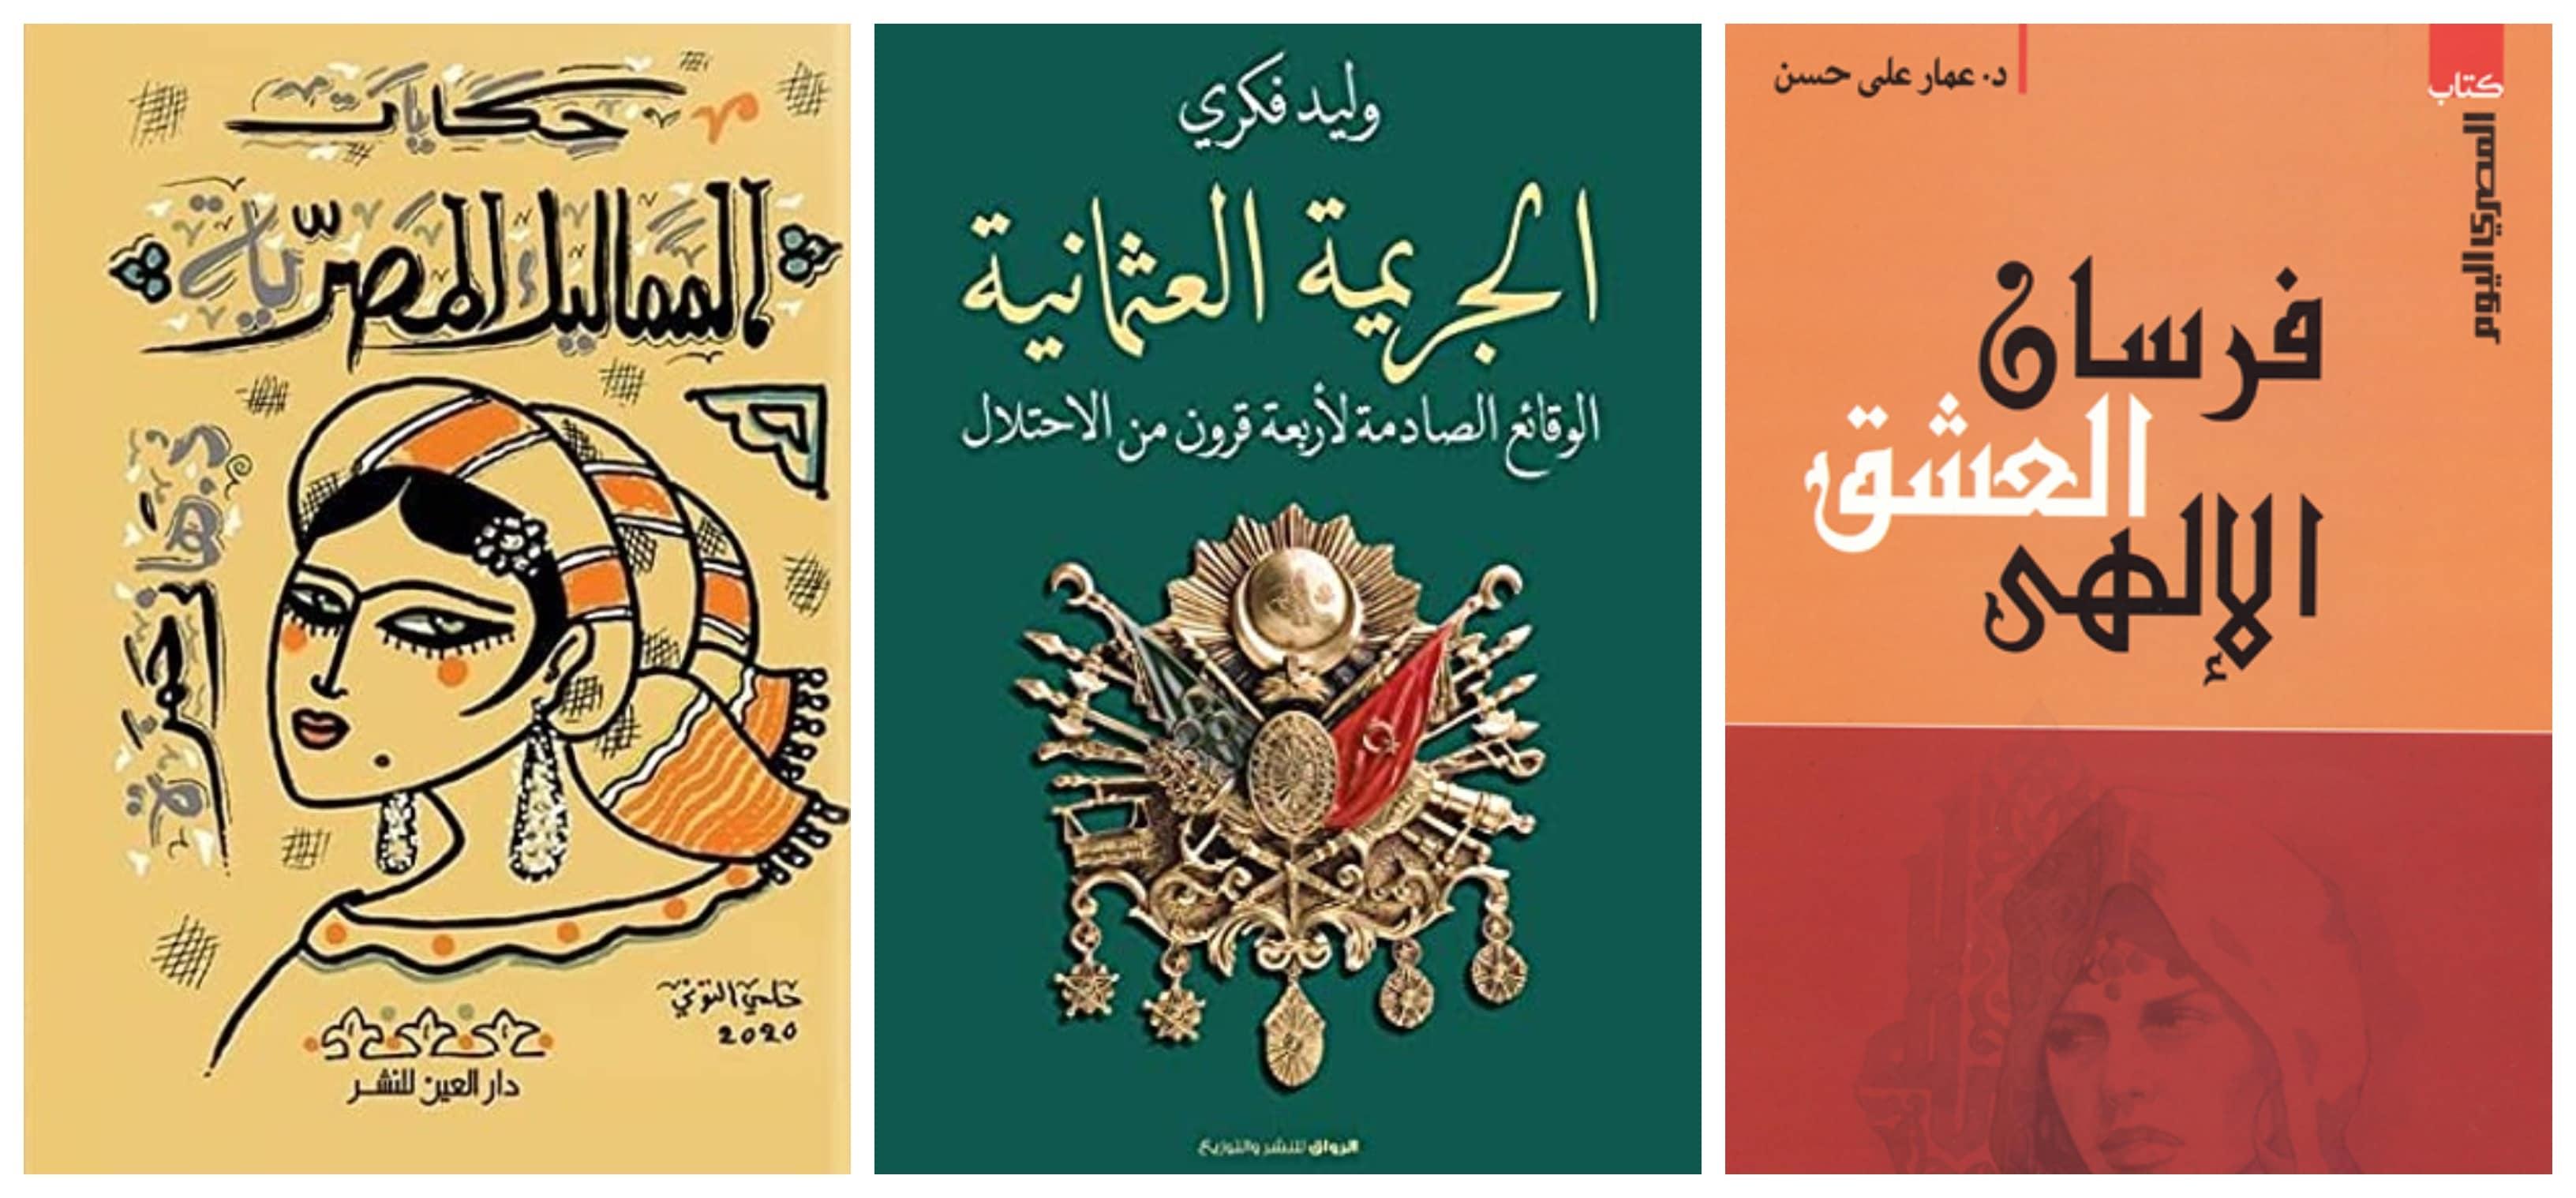 كتب من التاريخ الإسلامي - ترشيحات القراءة في رمضان